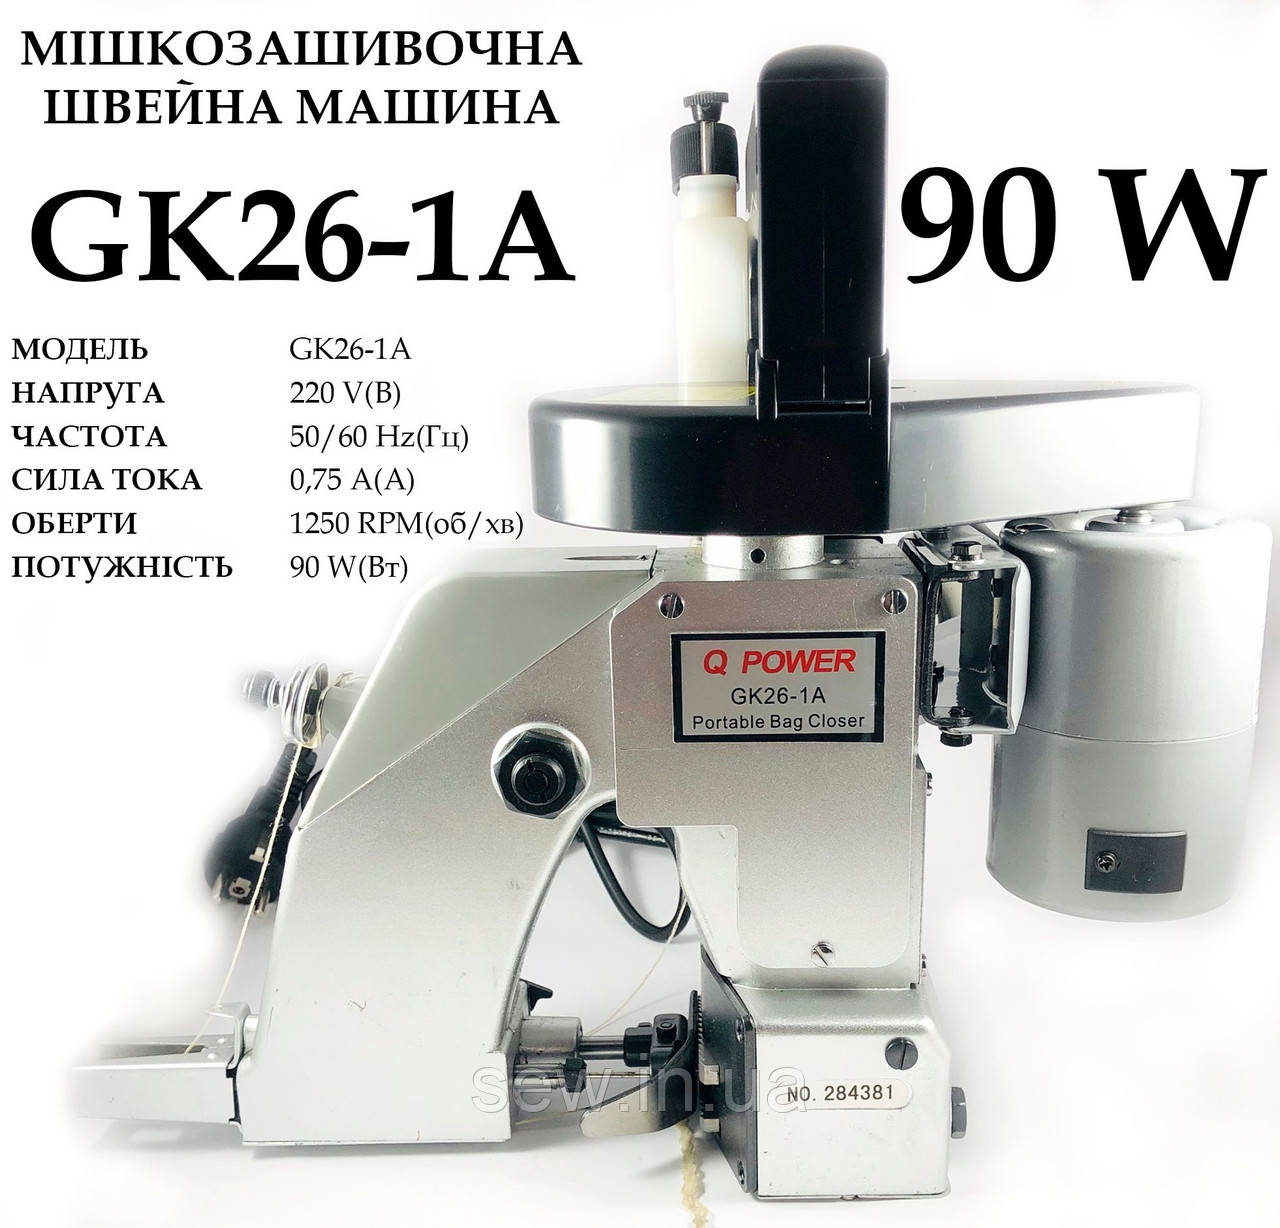 Мішкозашивальна машина GK26-1A